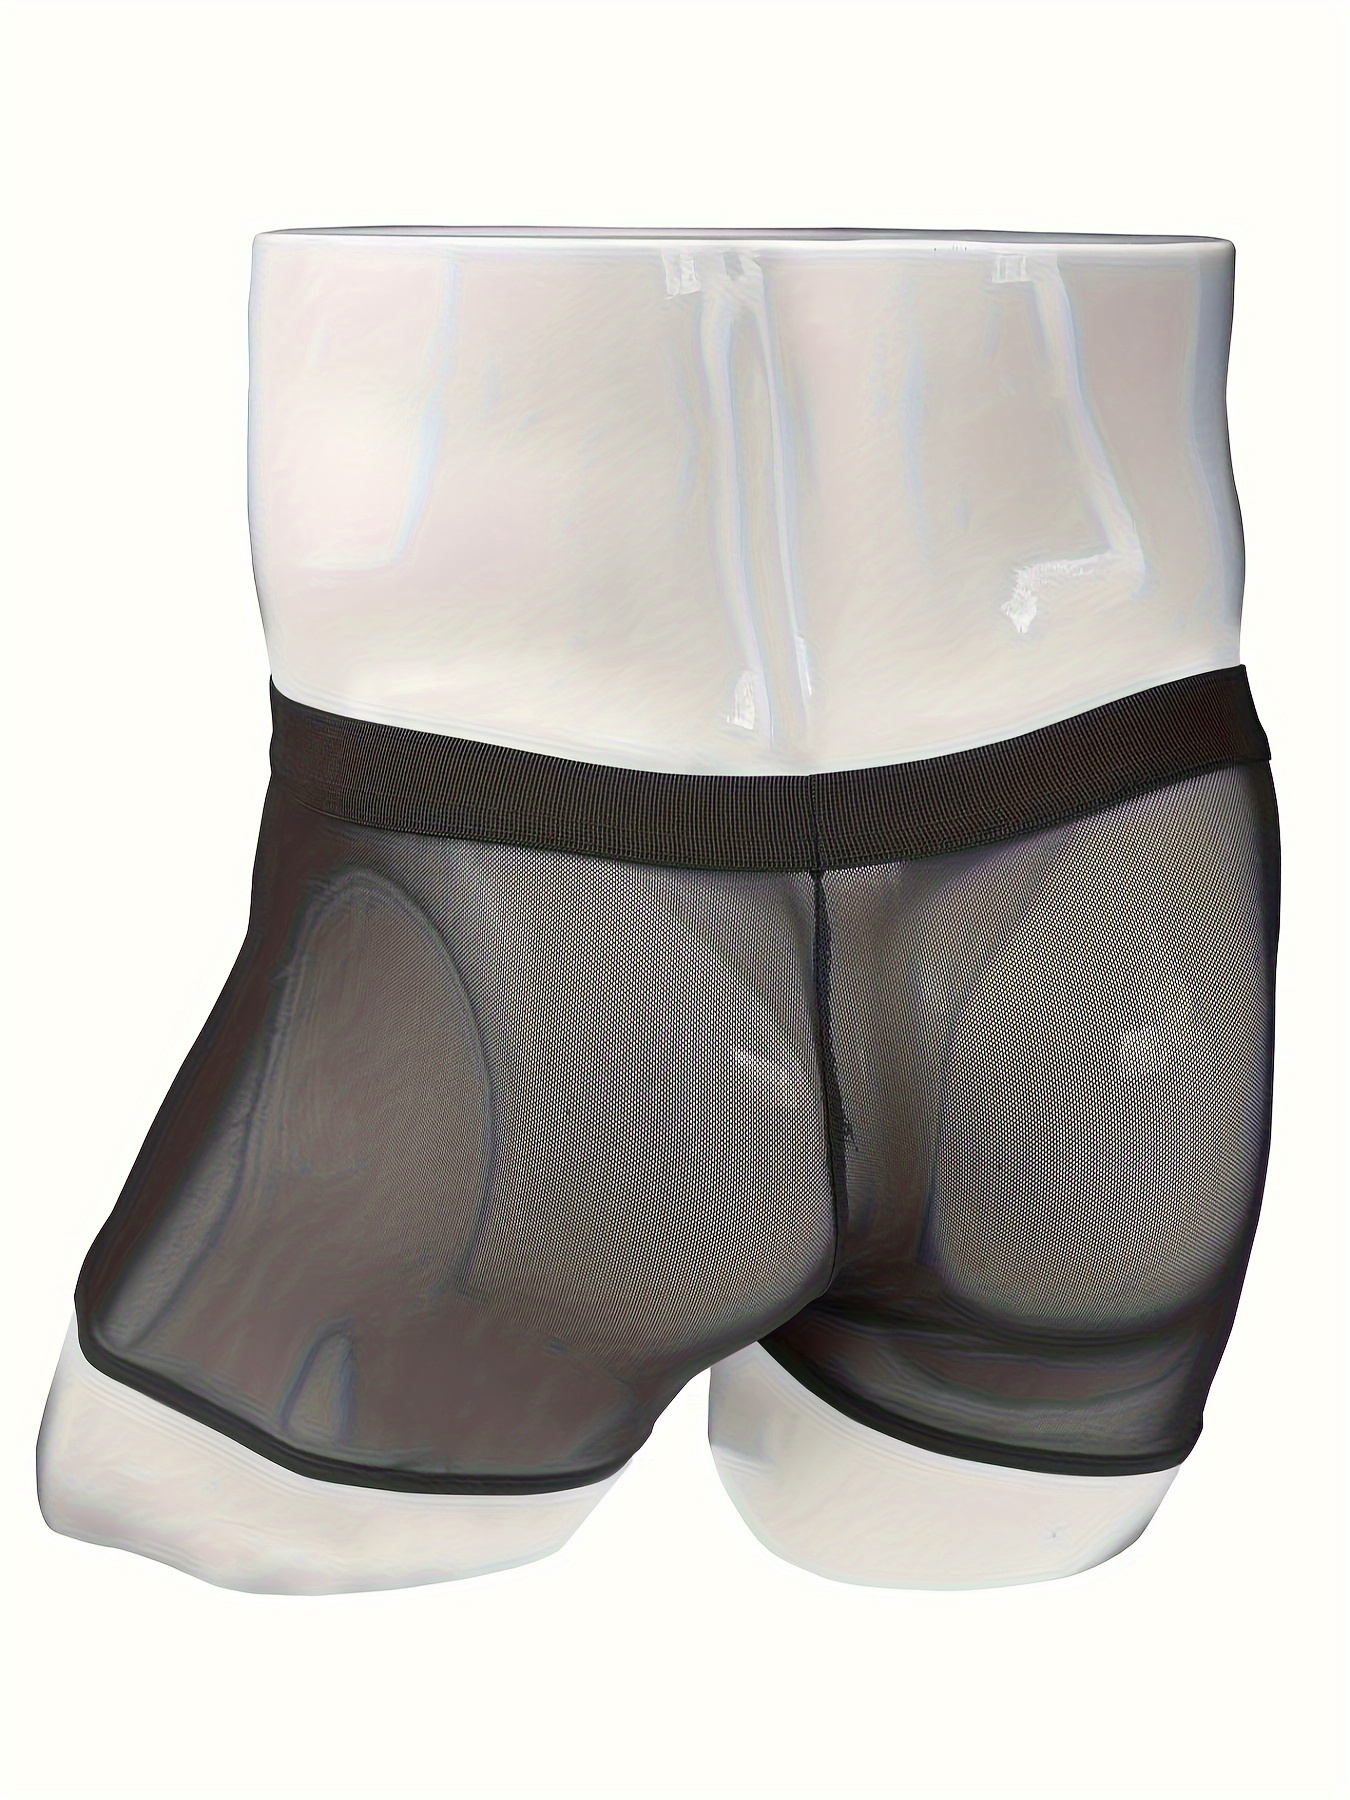 Athletic Men's Underwear Men's Sexy Underwear Transparent See